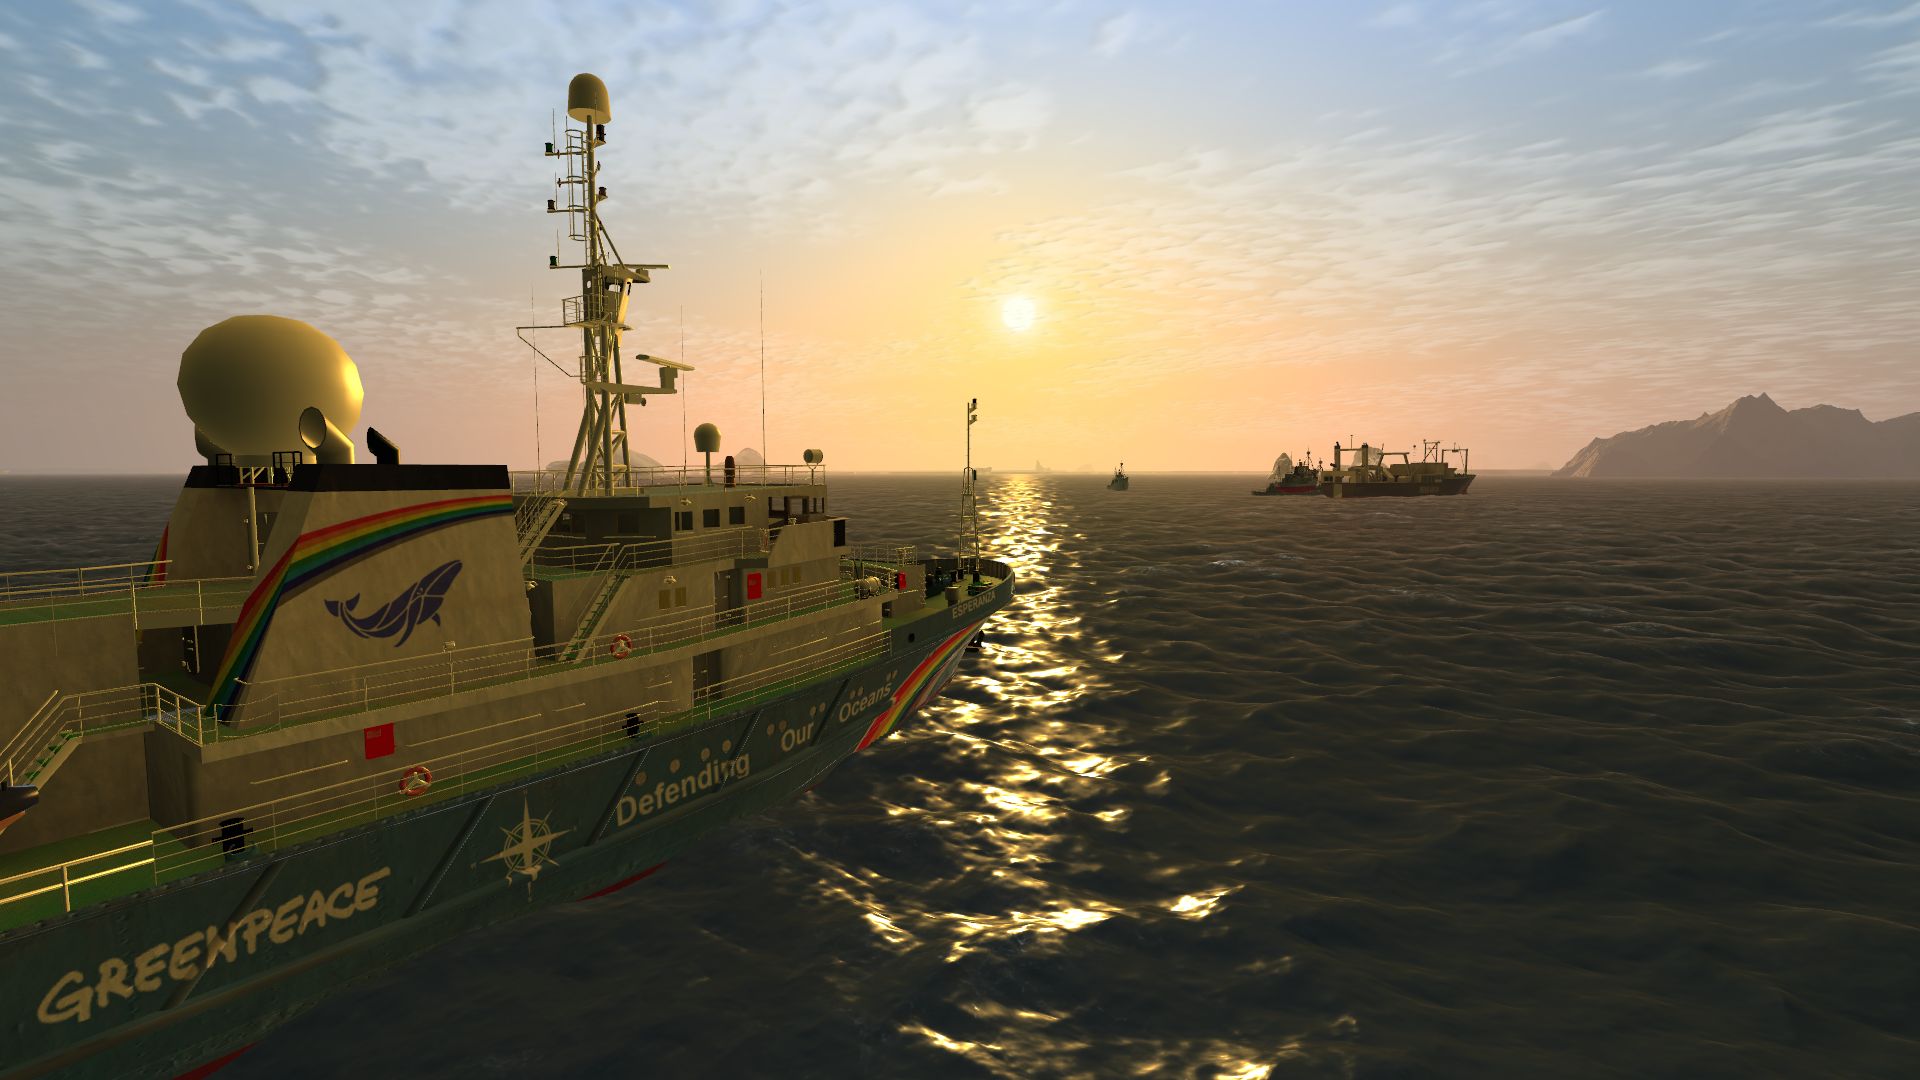 ship simulator extremes download mac